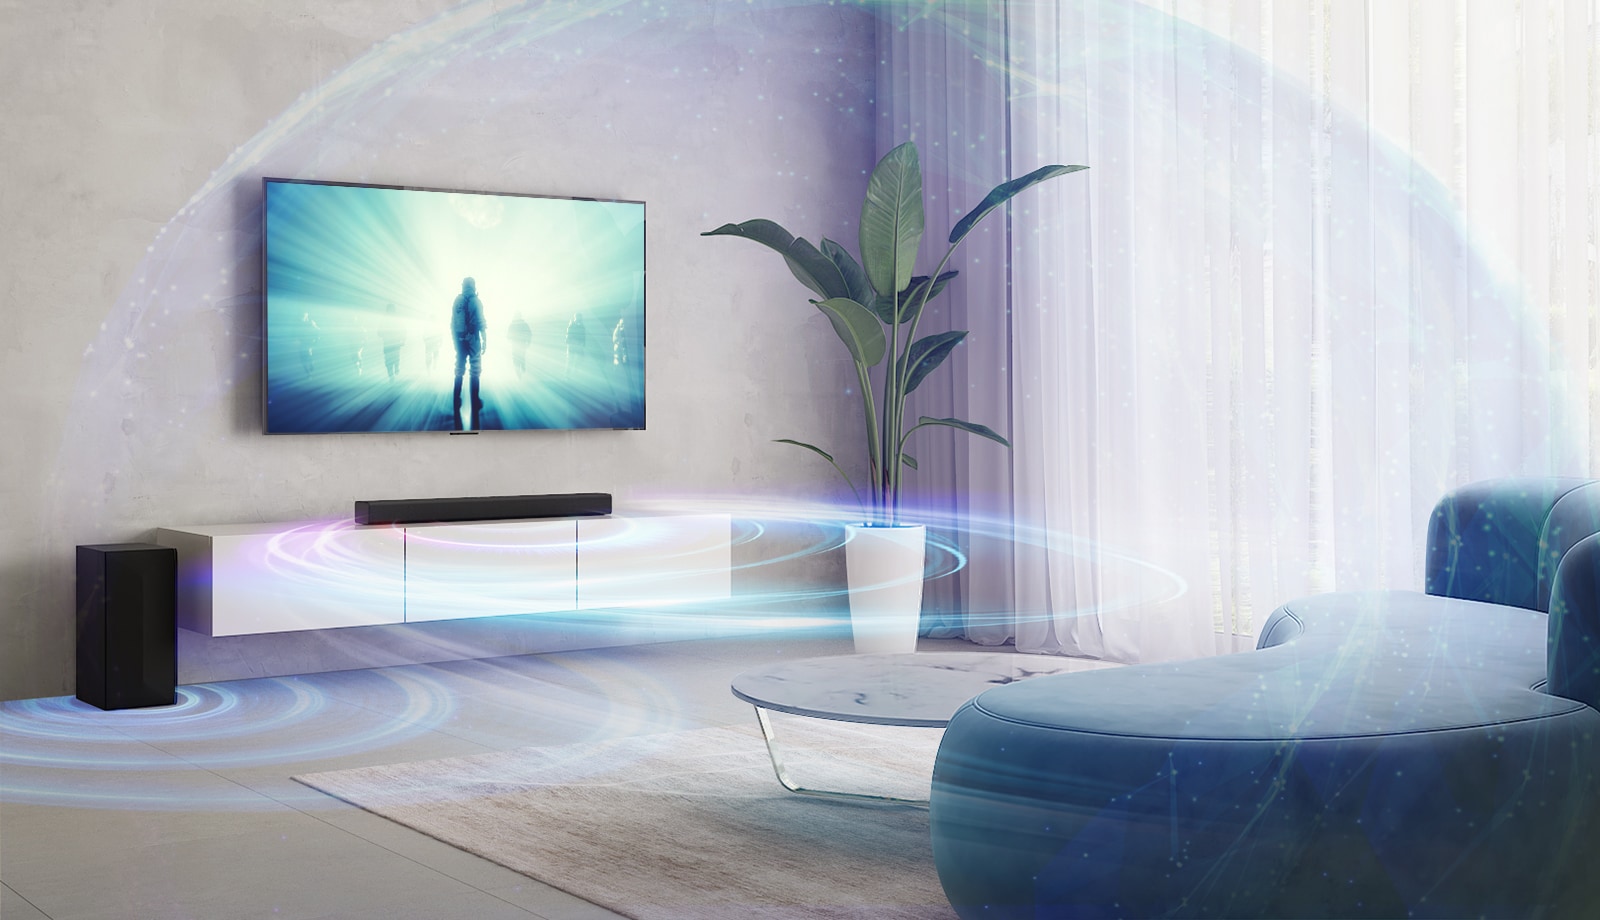 Телевизор LG, размещенный на стене в гостиной. На экране телевизора демонстрируется фильм. Прямо под телевизором на бежевой полке установлен саундбар LG с расположенным слева задним динамиком.